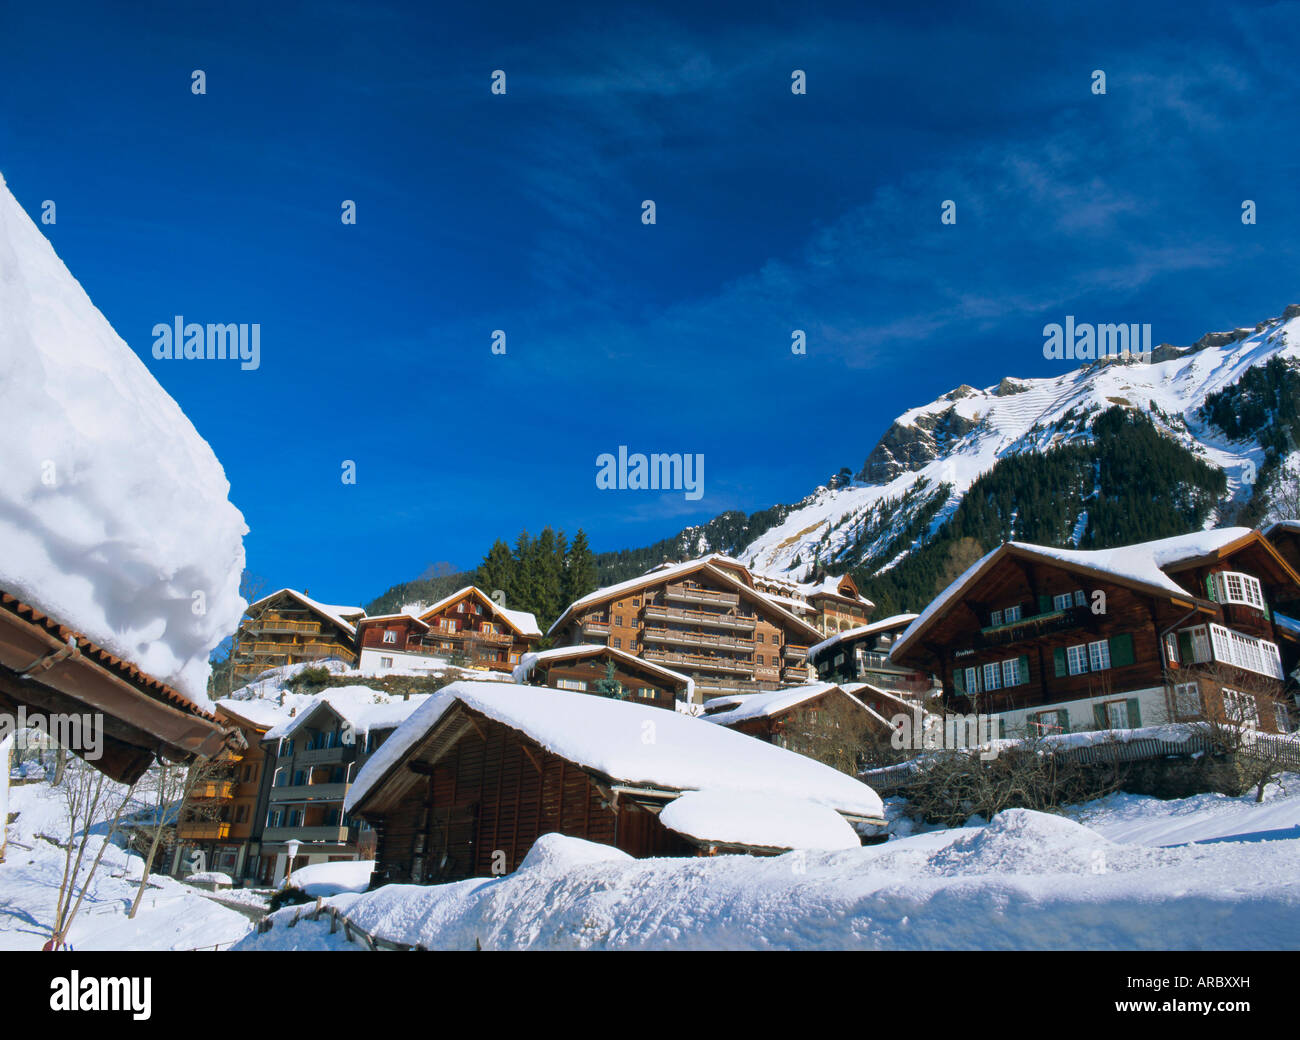 Chalets et hôtels, Wengen, l'Oberland bernois, Swiss Alps, Switzerland, Europe Banque D'Images